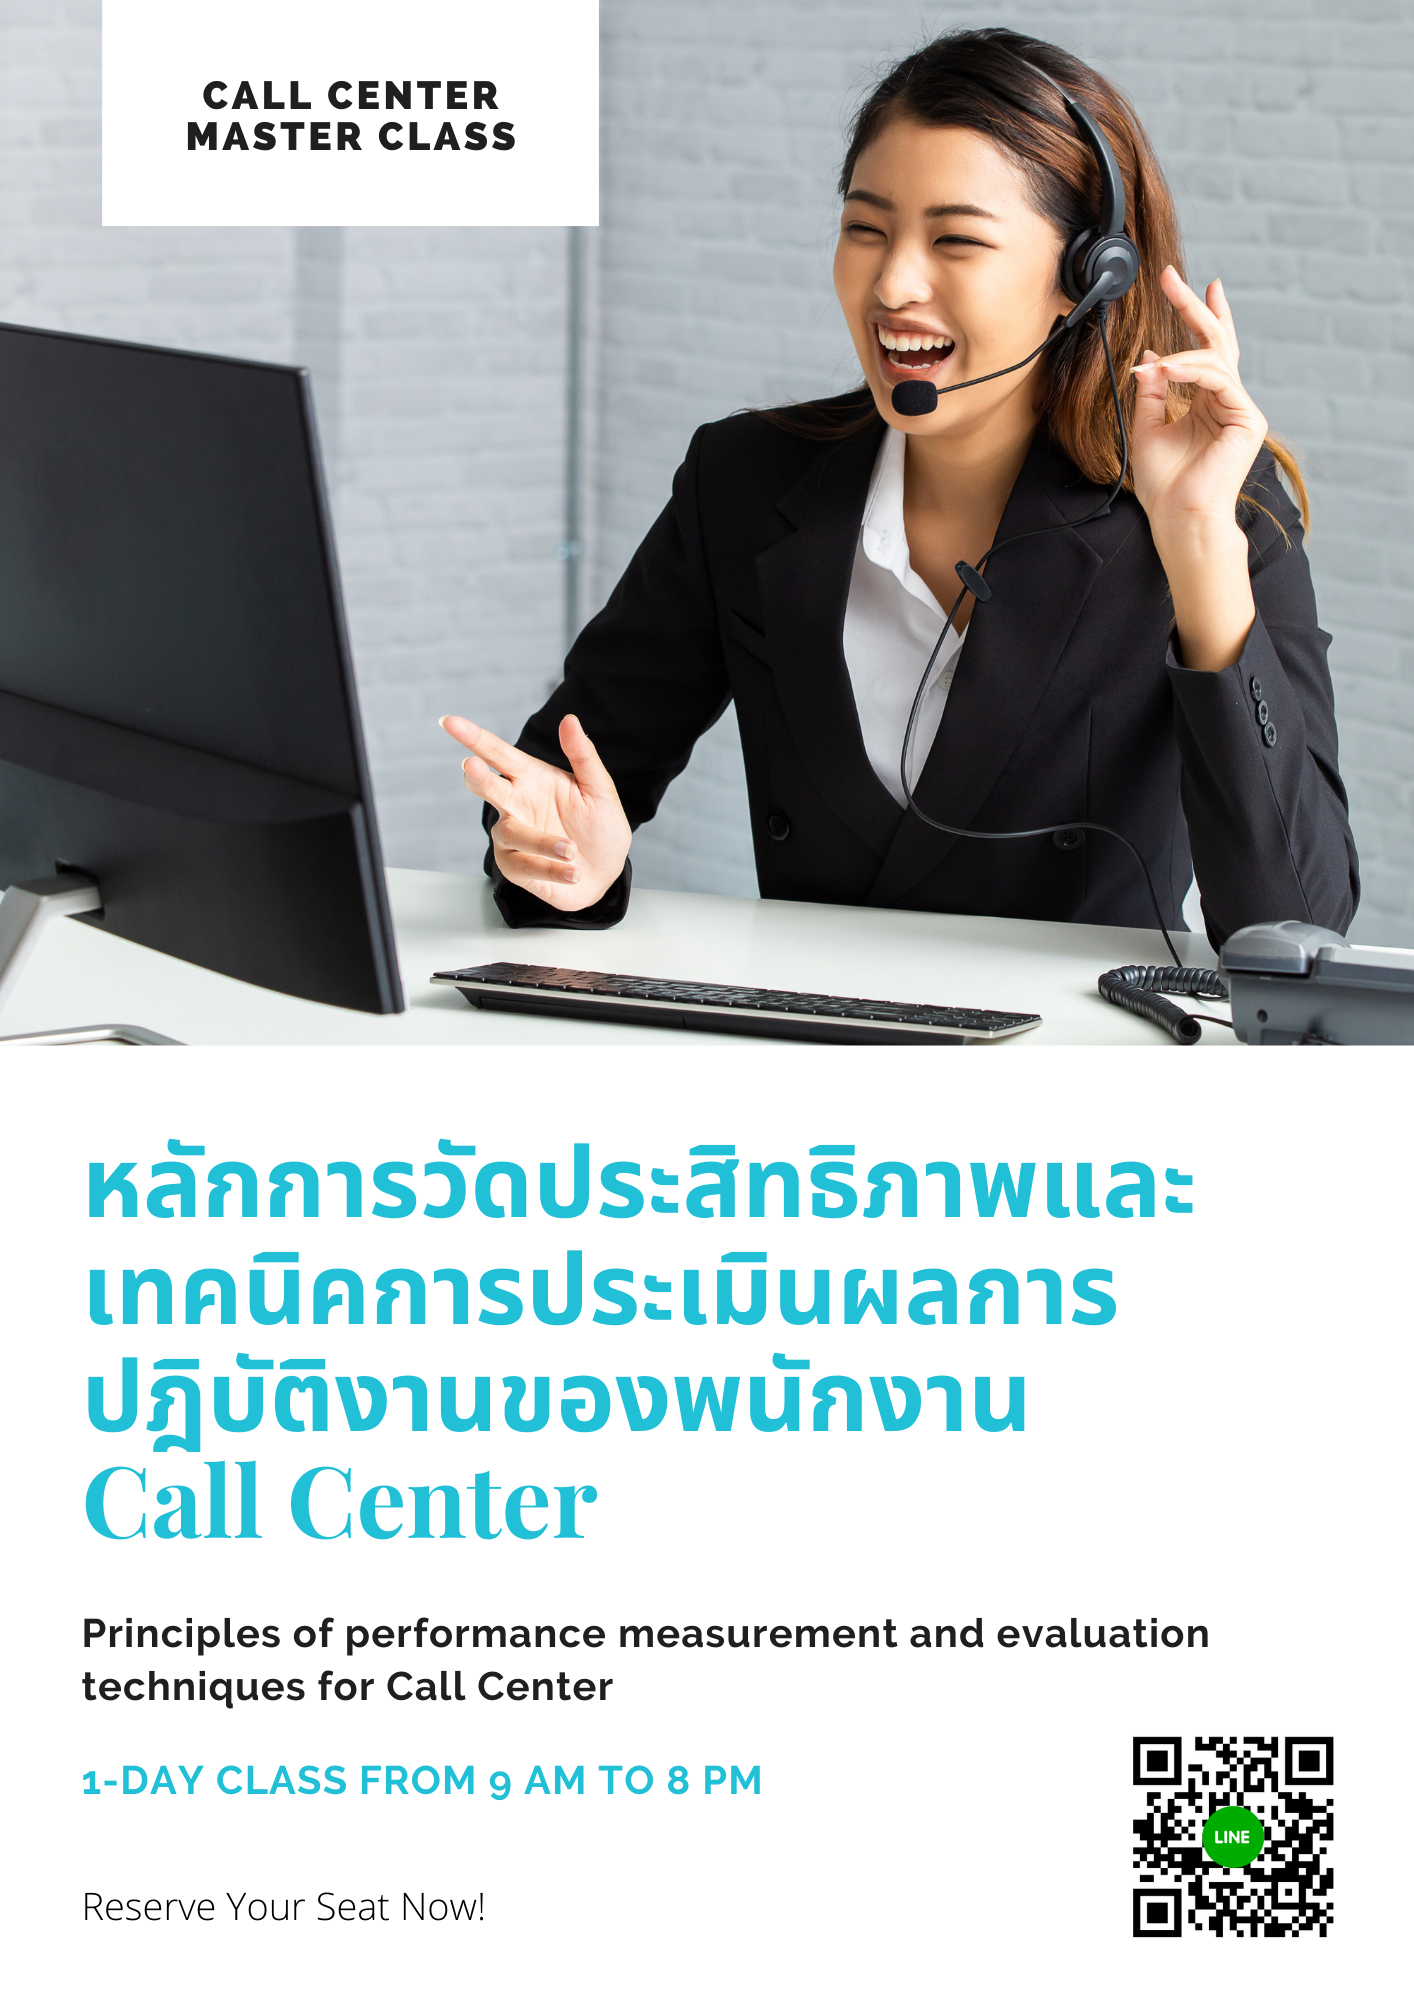 หลักการวัดประสิทธิภาพและเทคนิคการประเมินผลการปฎิบัติงานของพนักงาน Call Center (Principles of performance measurement and evaluation techniques for Call Center)